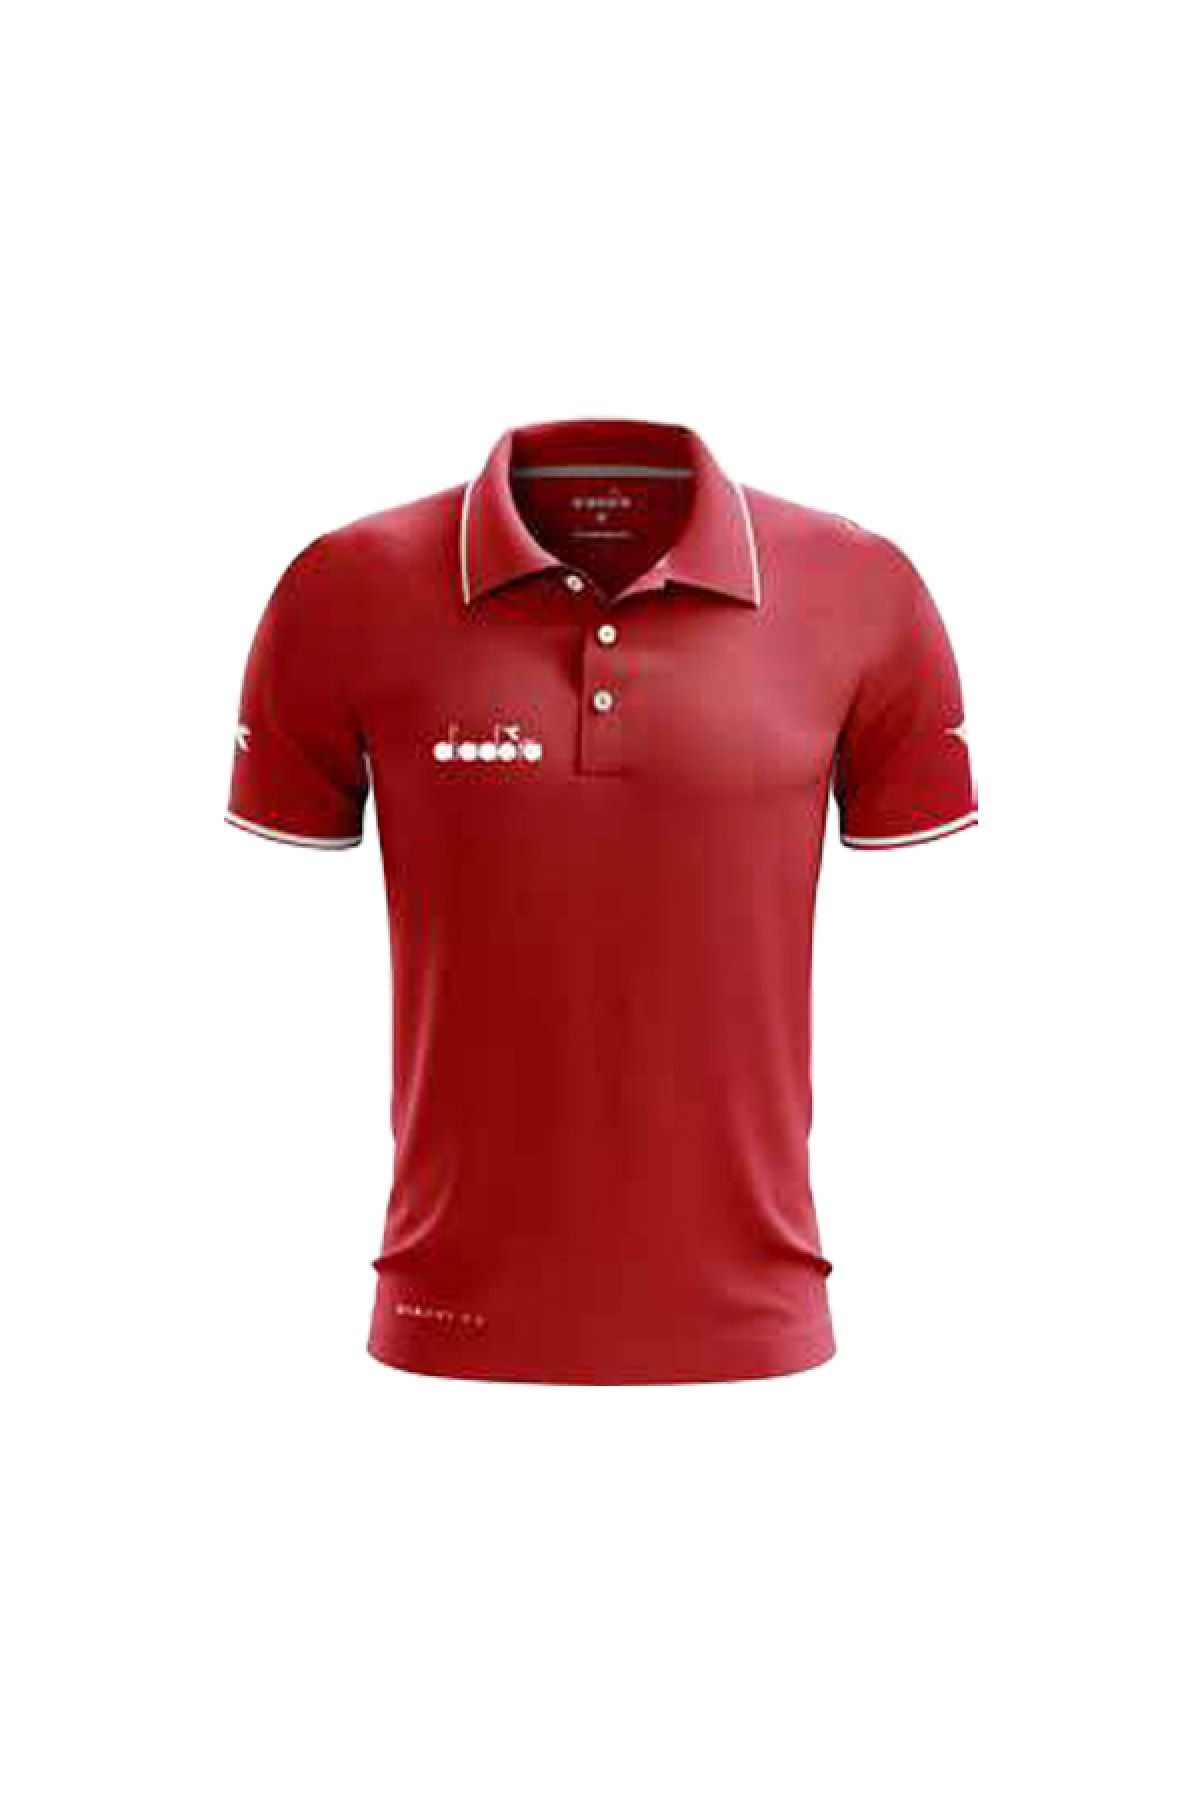 Diadora Erkek Kırmızı Polo Yaka T-Shirt